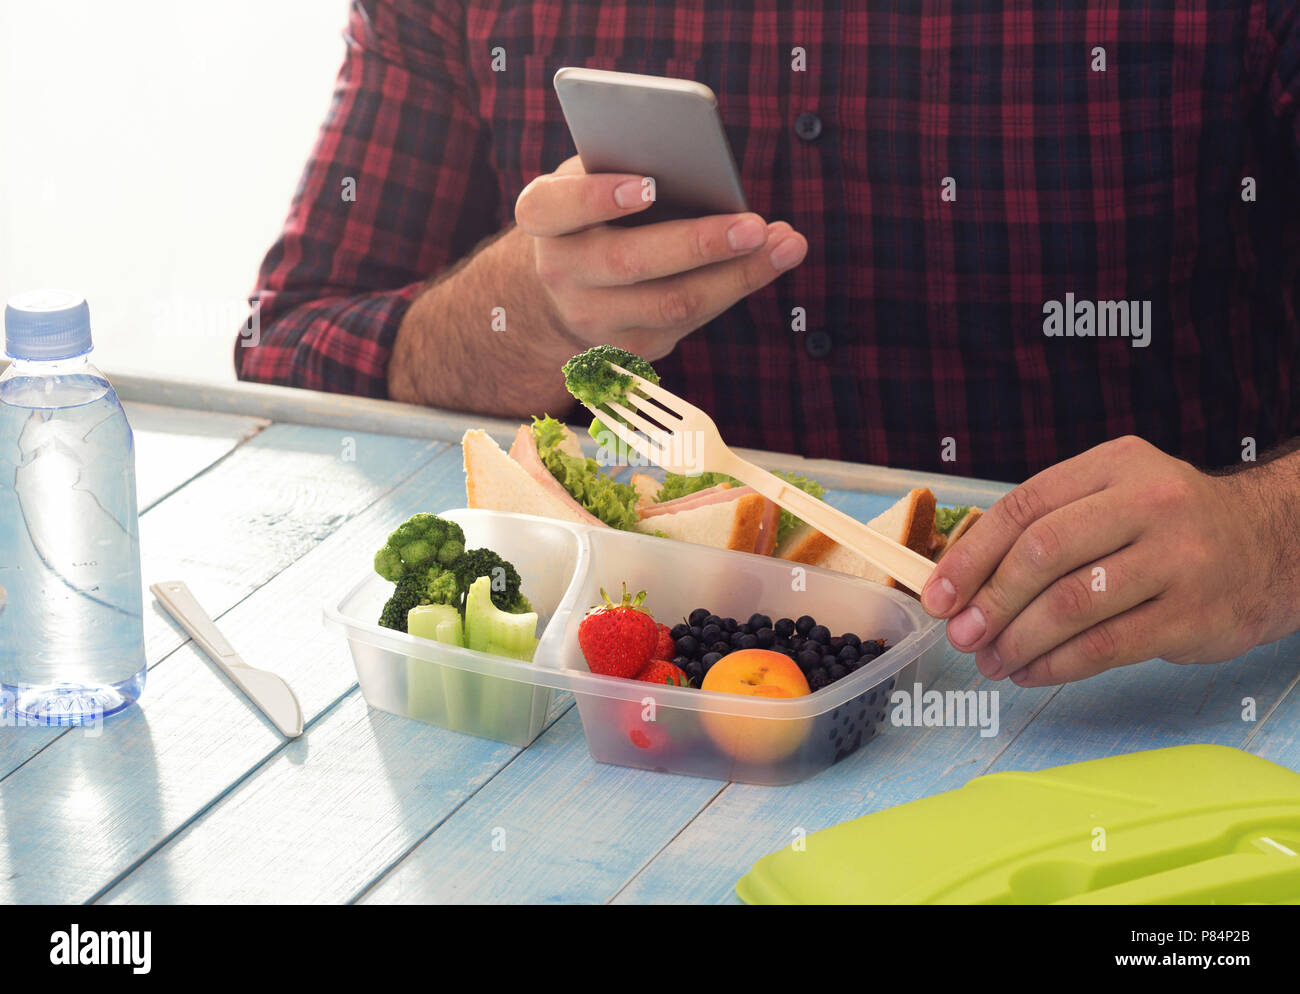 Mann fotografieren Lunch Box mit gesunden Lebensmitteln am blauen Tisch sitzen. Gesunde Ernährung Konzept Stockfoto